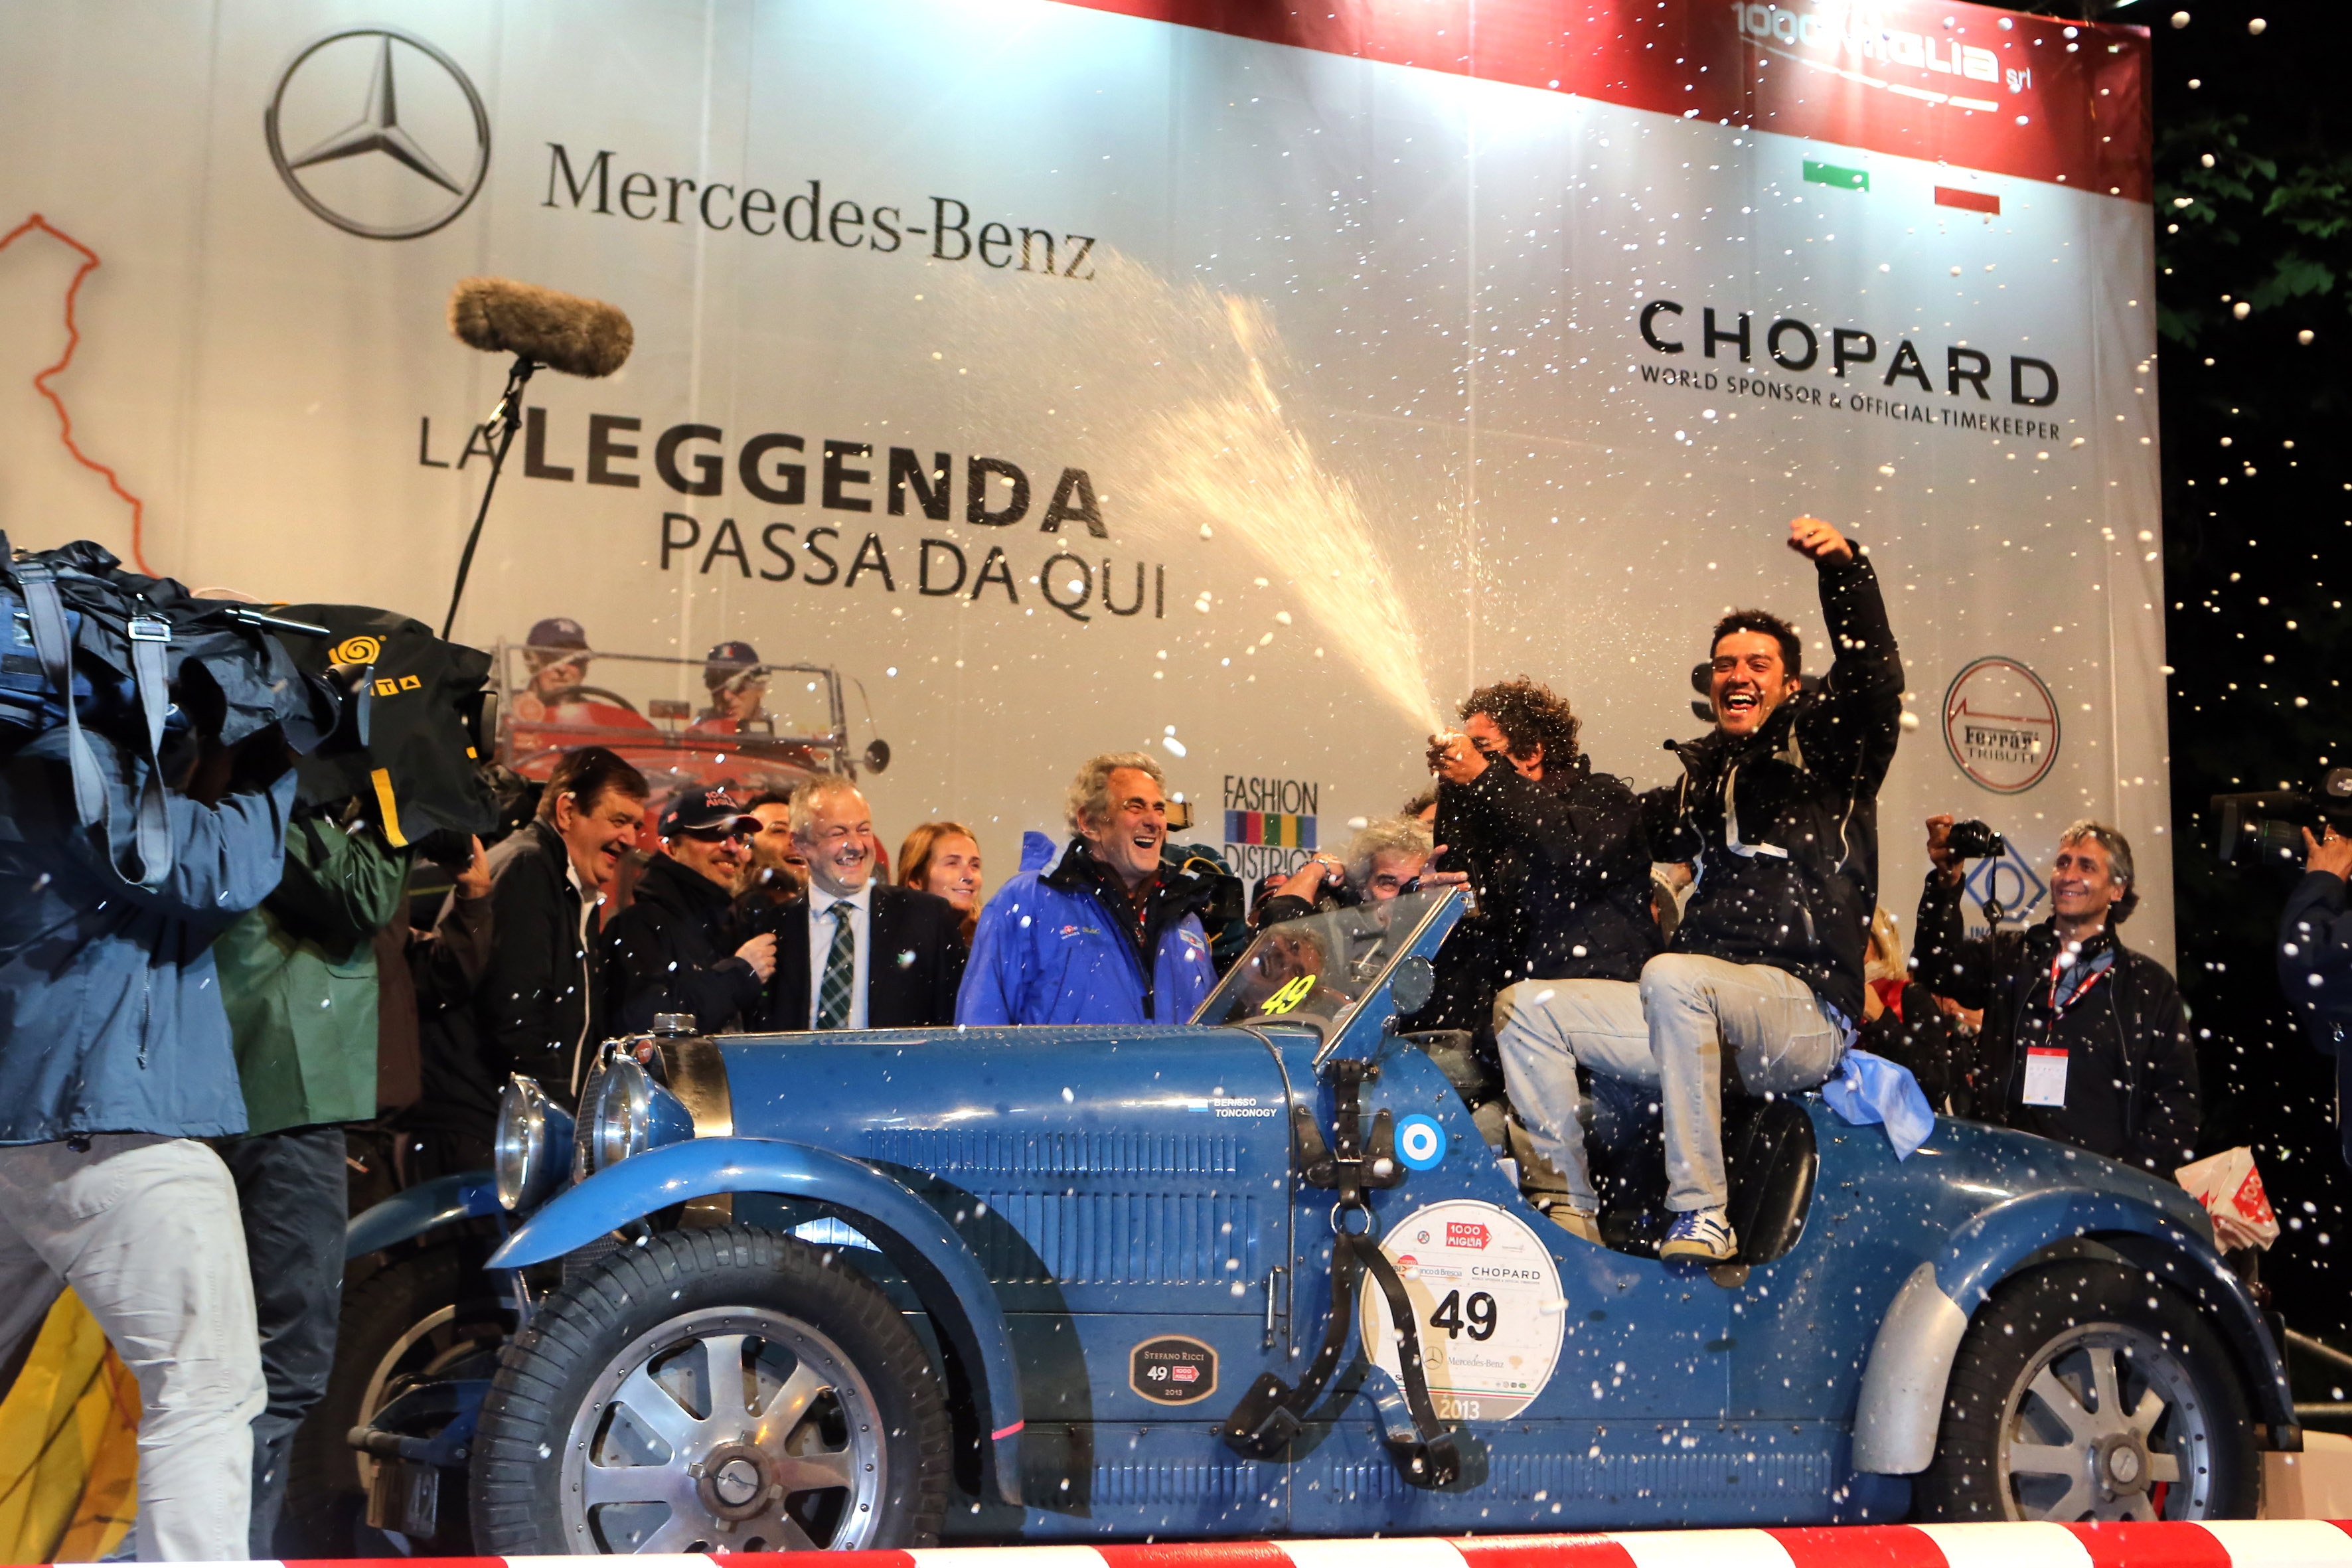 Mille Miglia 2013: trionfa la coppia argentina Tonconogy-Berisso